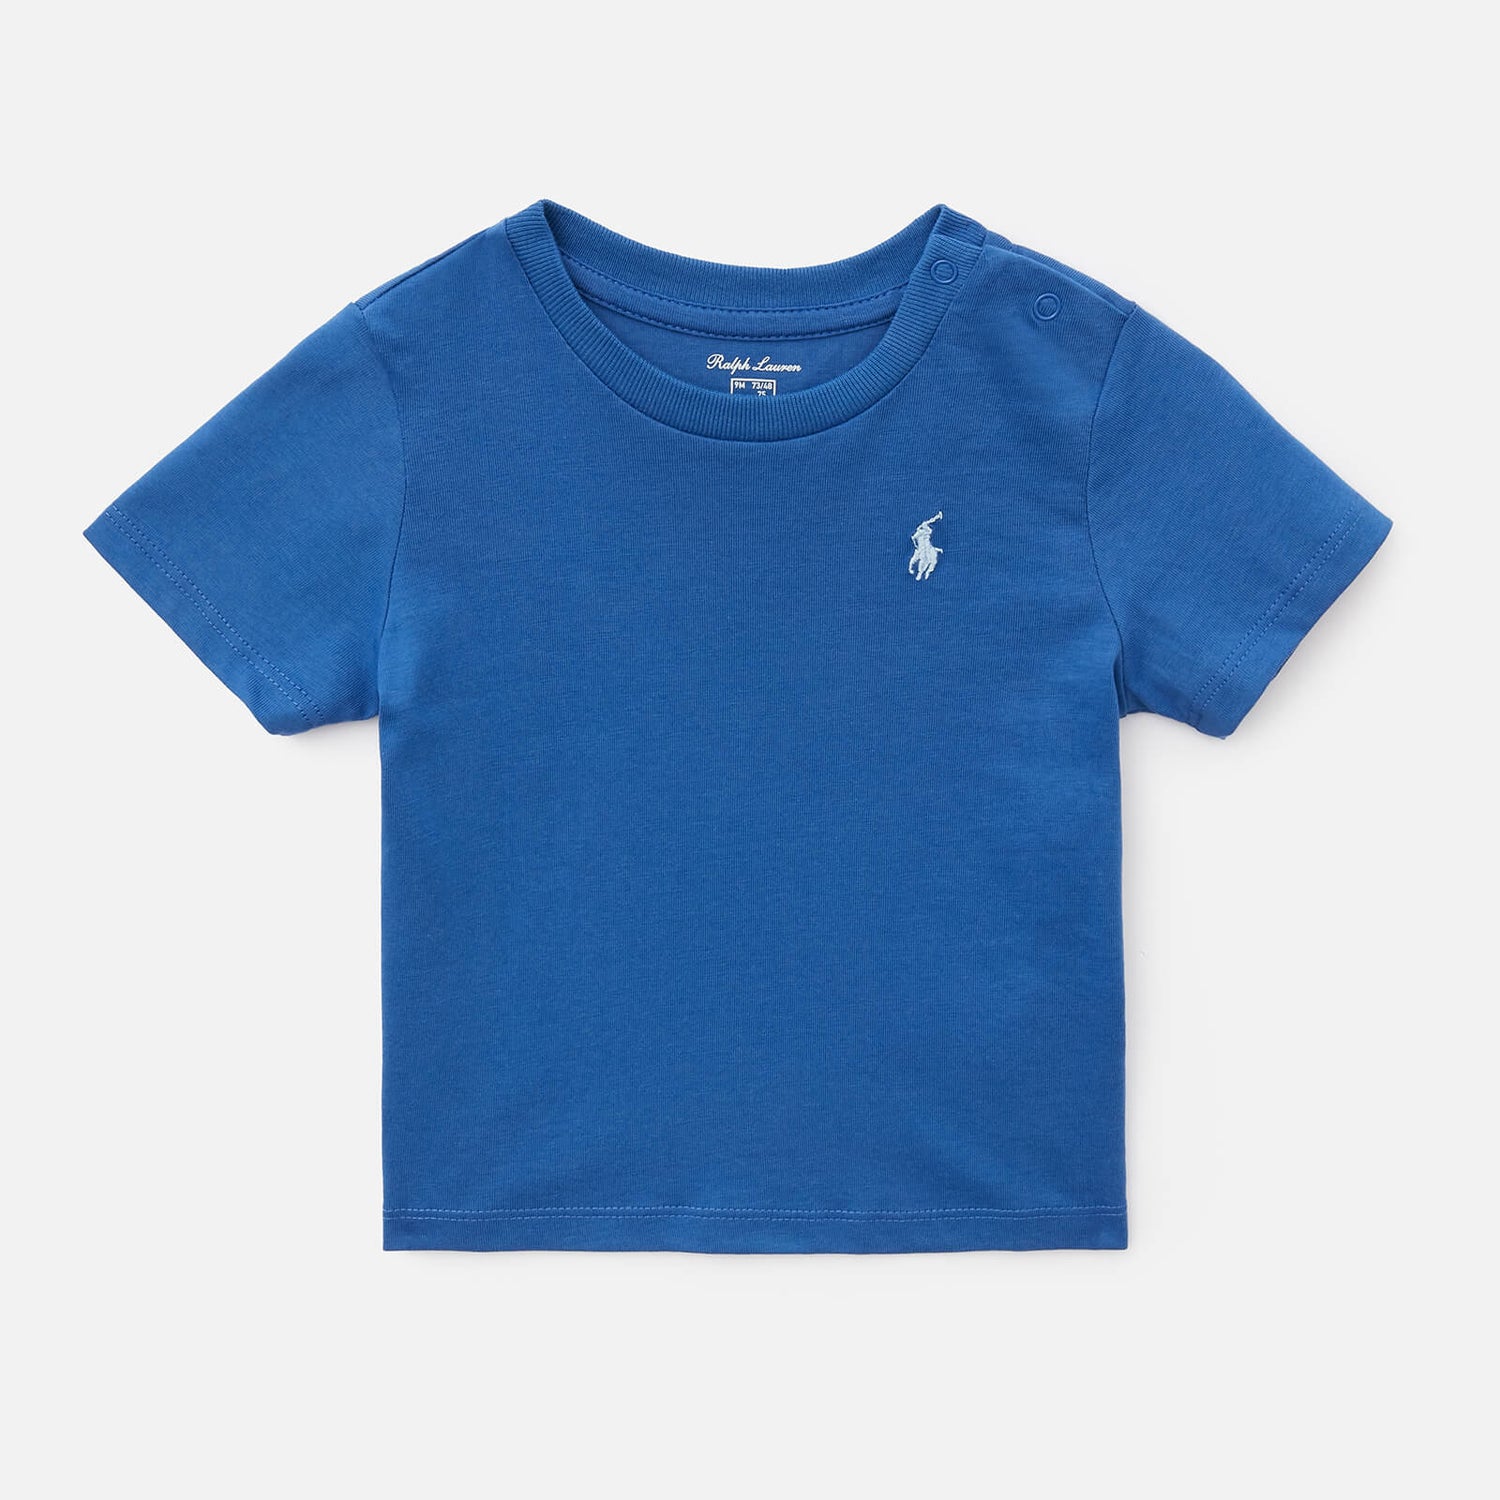 Polo Ralph Lauren Babys' Small Logo T-Shirt - Liberty Blue - 3-6 months